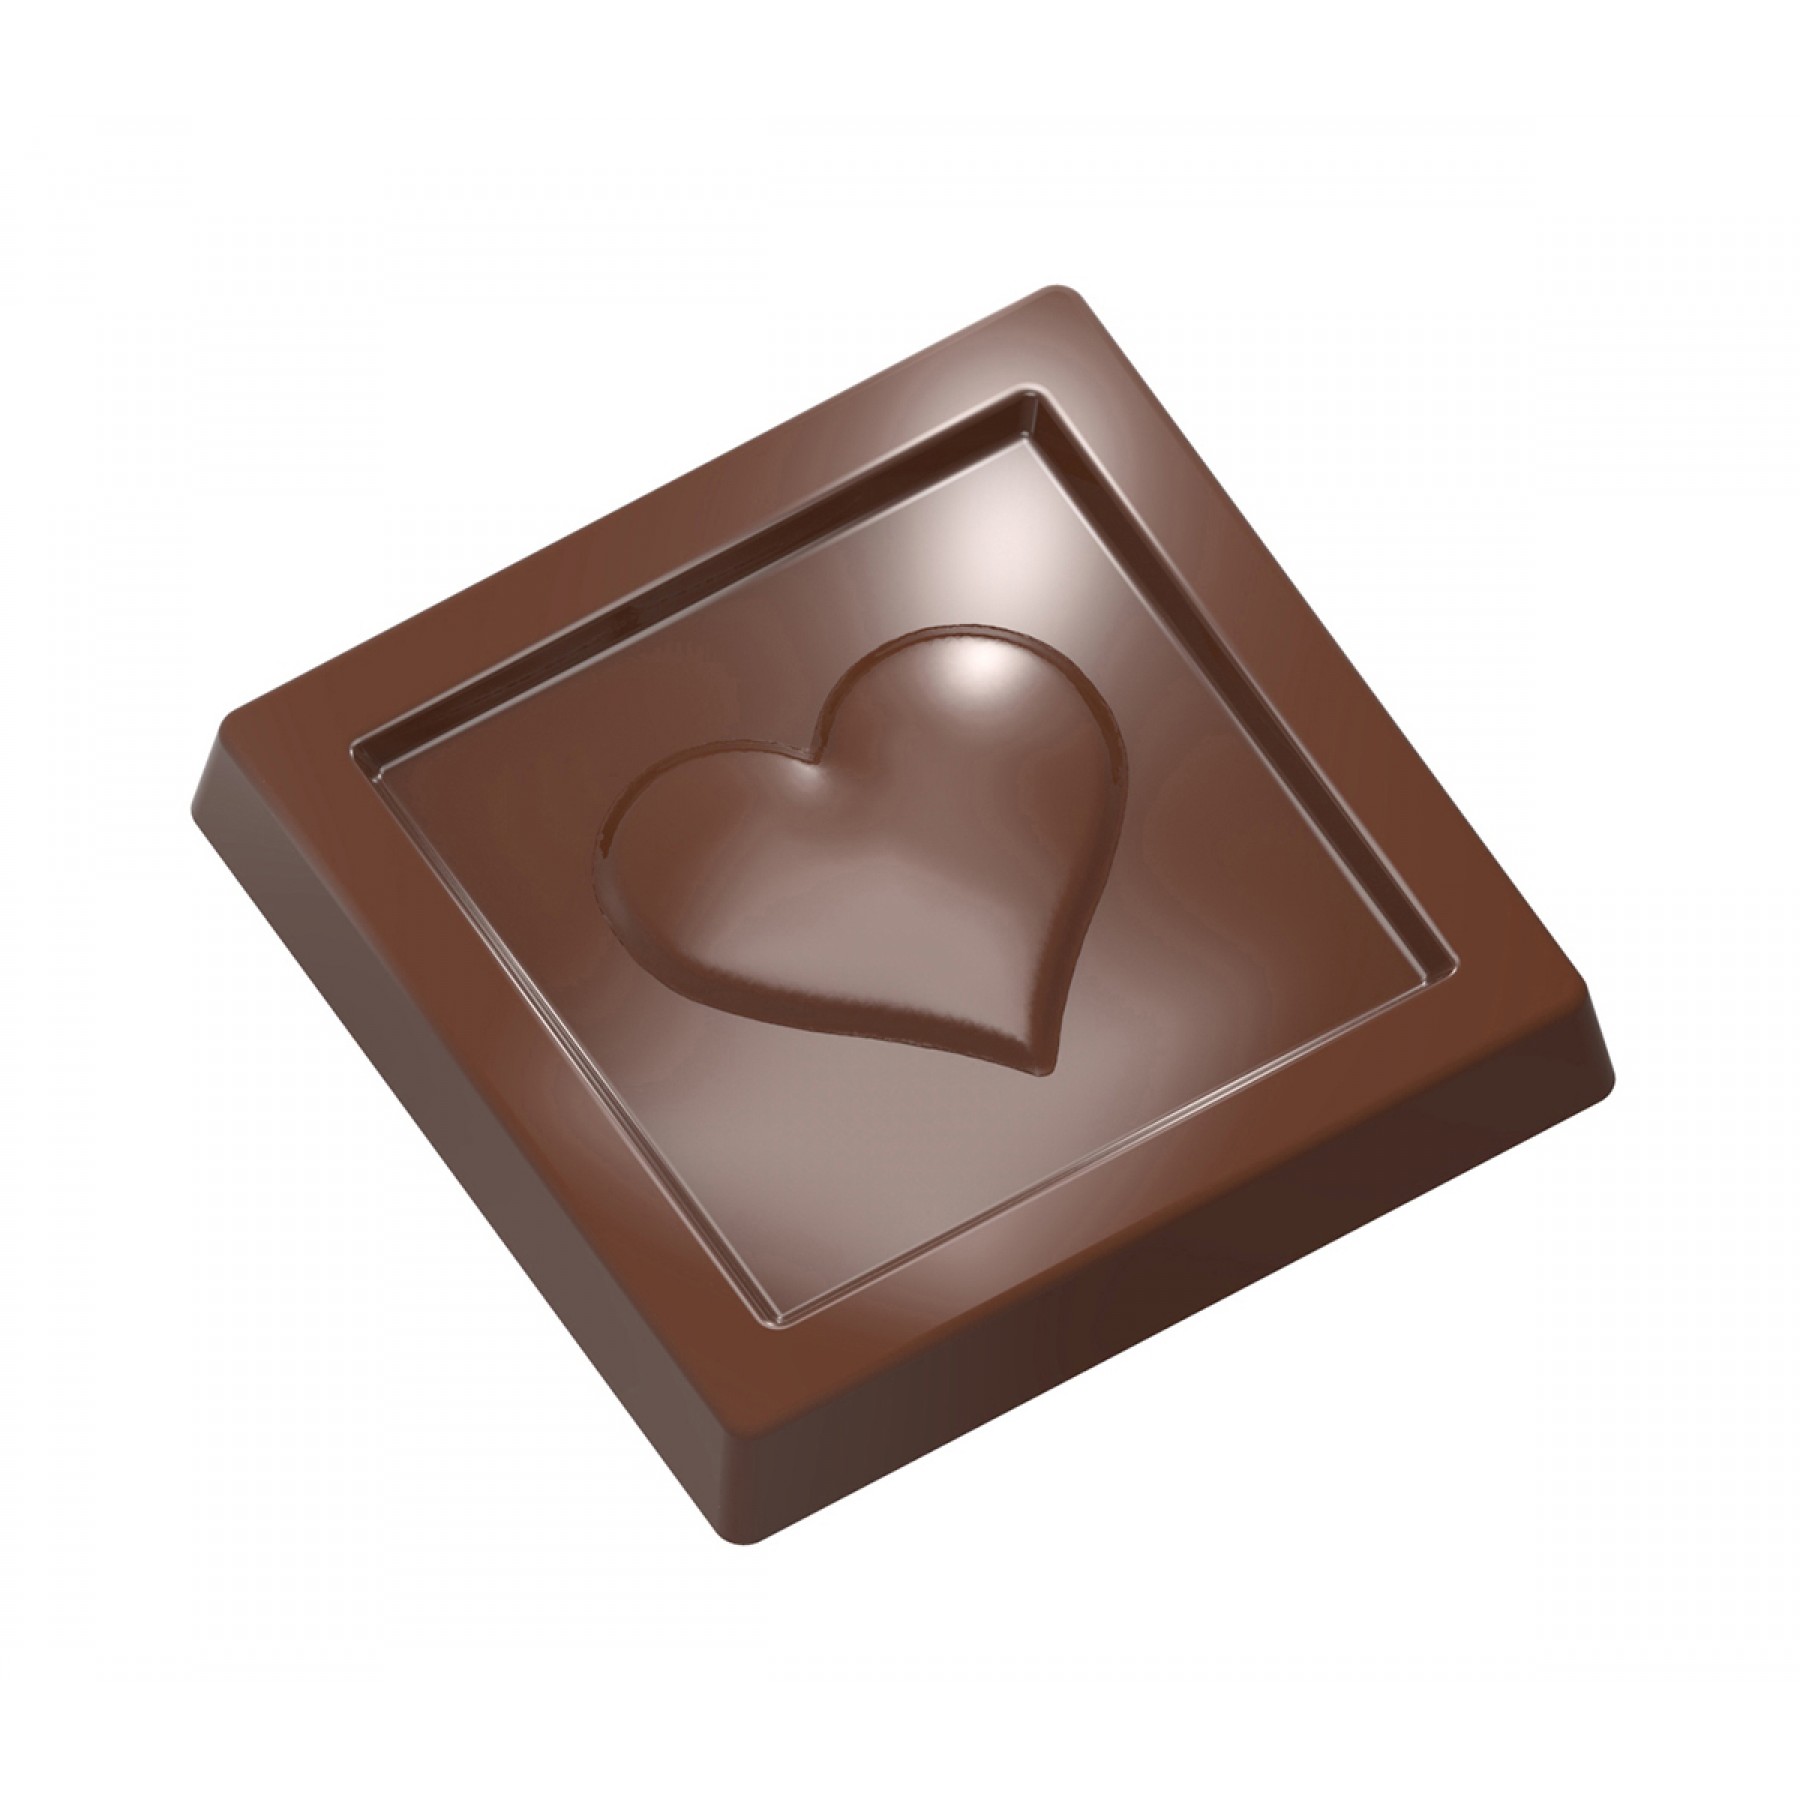 Шоколадные формы купить. Поликарбонатные формы для шоколада Chocolate World. Поликарбонатная форма "Chocolate World" - Рождество. Поликарбонатная форма Chocolate World 2116. Поликарбонатная форма "Chocolate World" - Курочка.